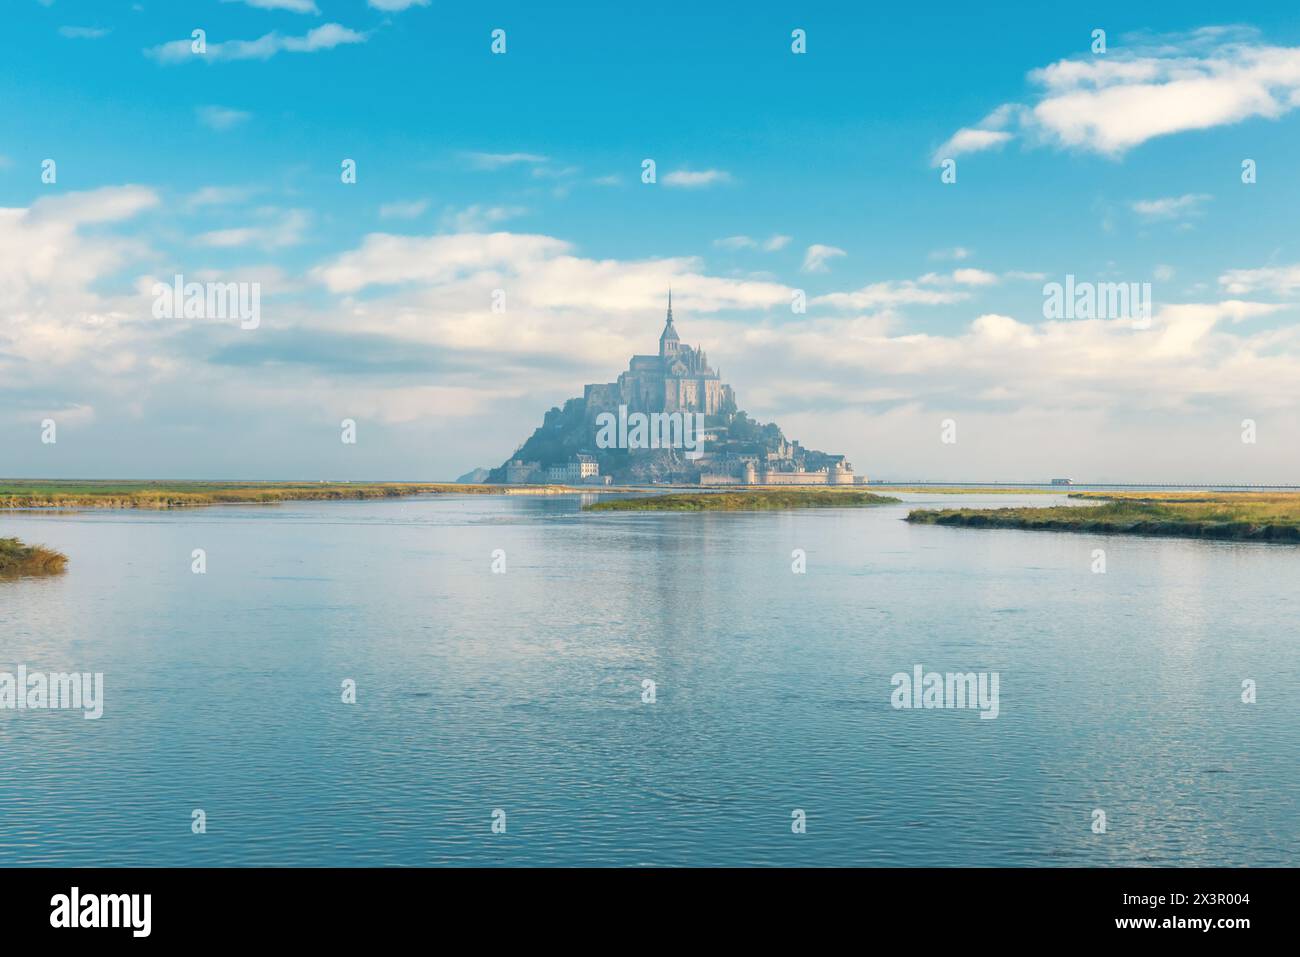 Abbazia di Mont Saint Michel sull'isola con il fiume all'alba, Normandia, Francia settentrionale, Europa. Isola di marea con cattedrale gotica medievale in Foto Stock